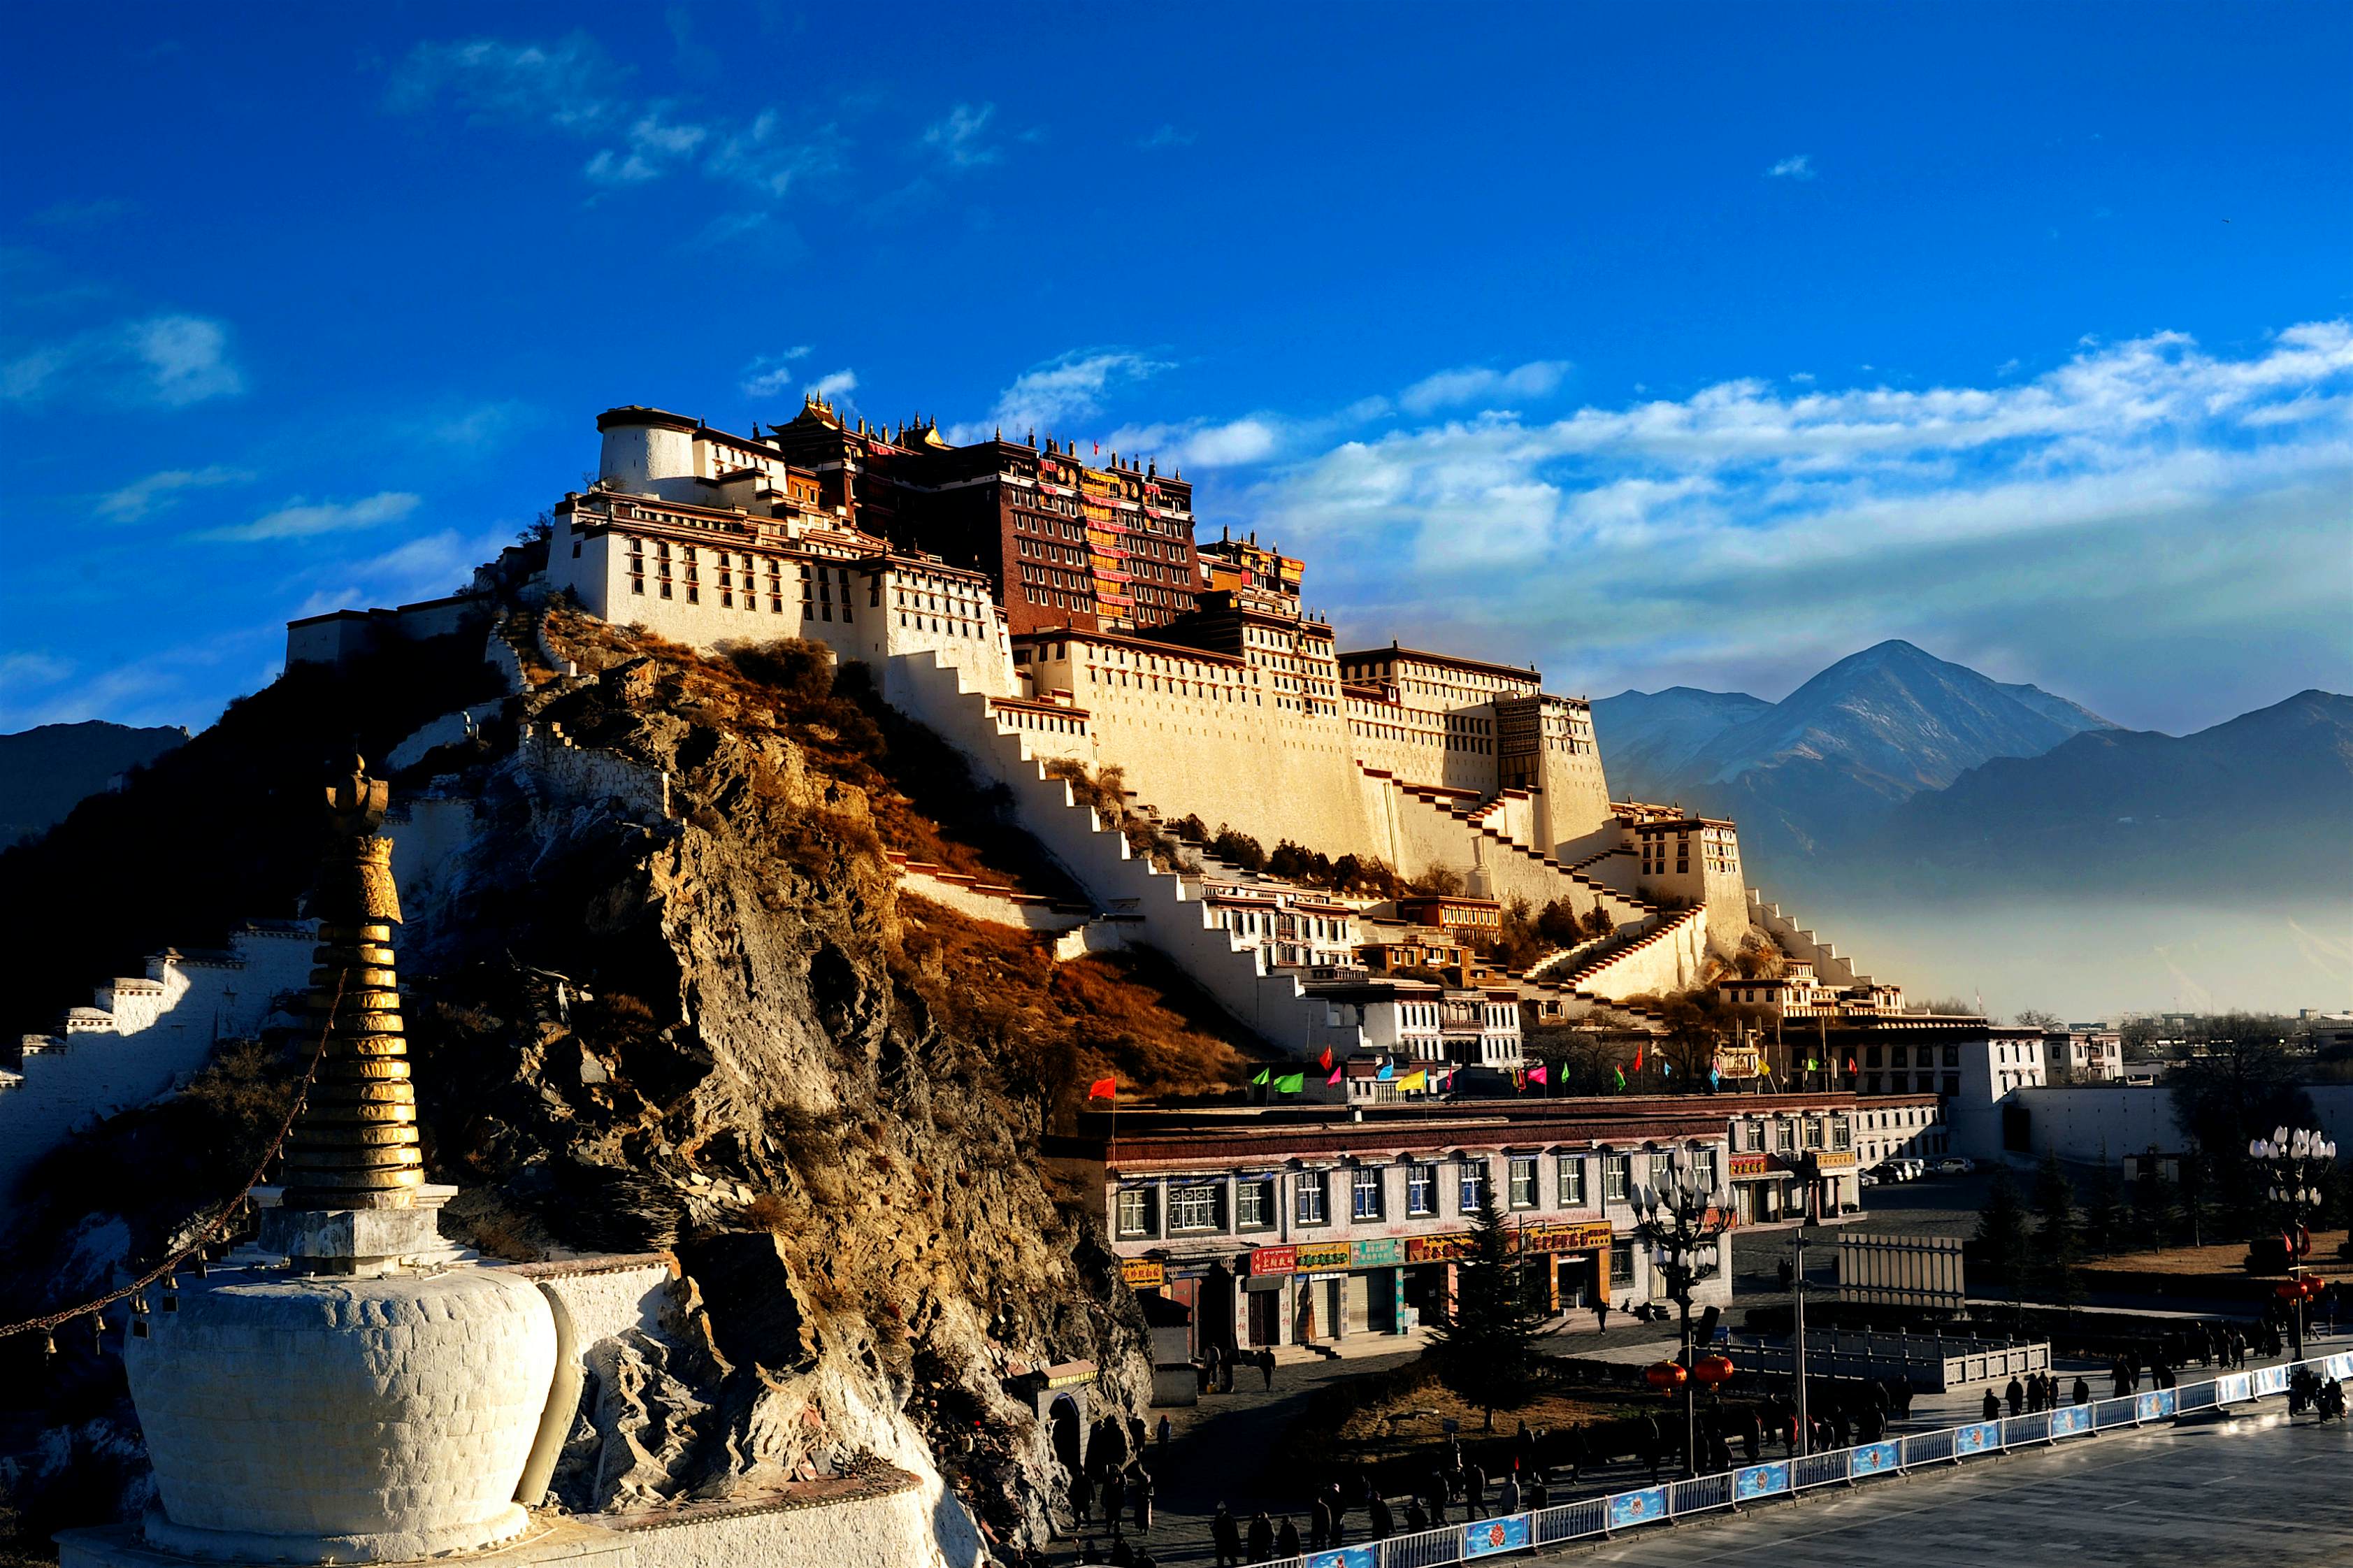 can you visit lhasa tibet